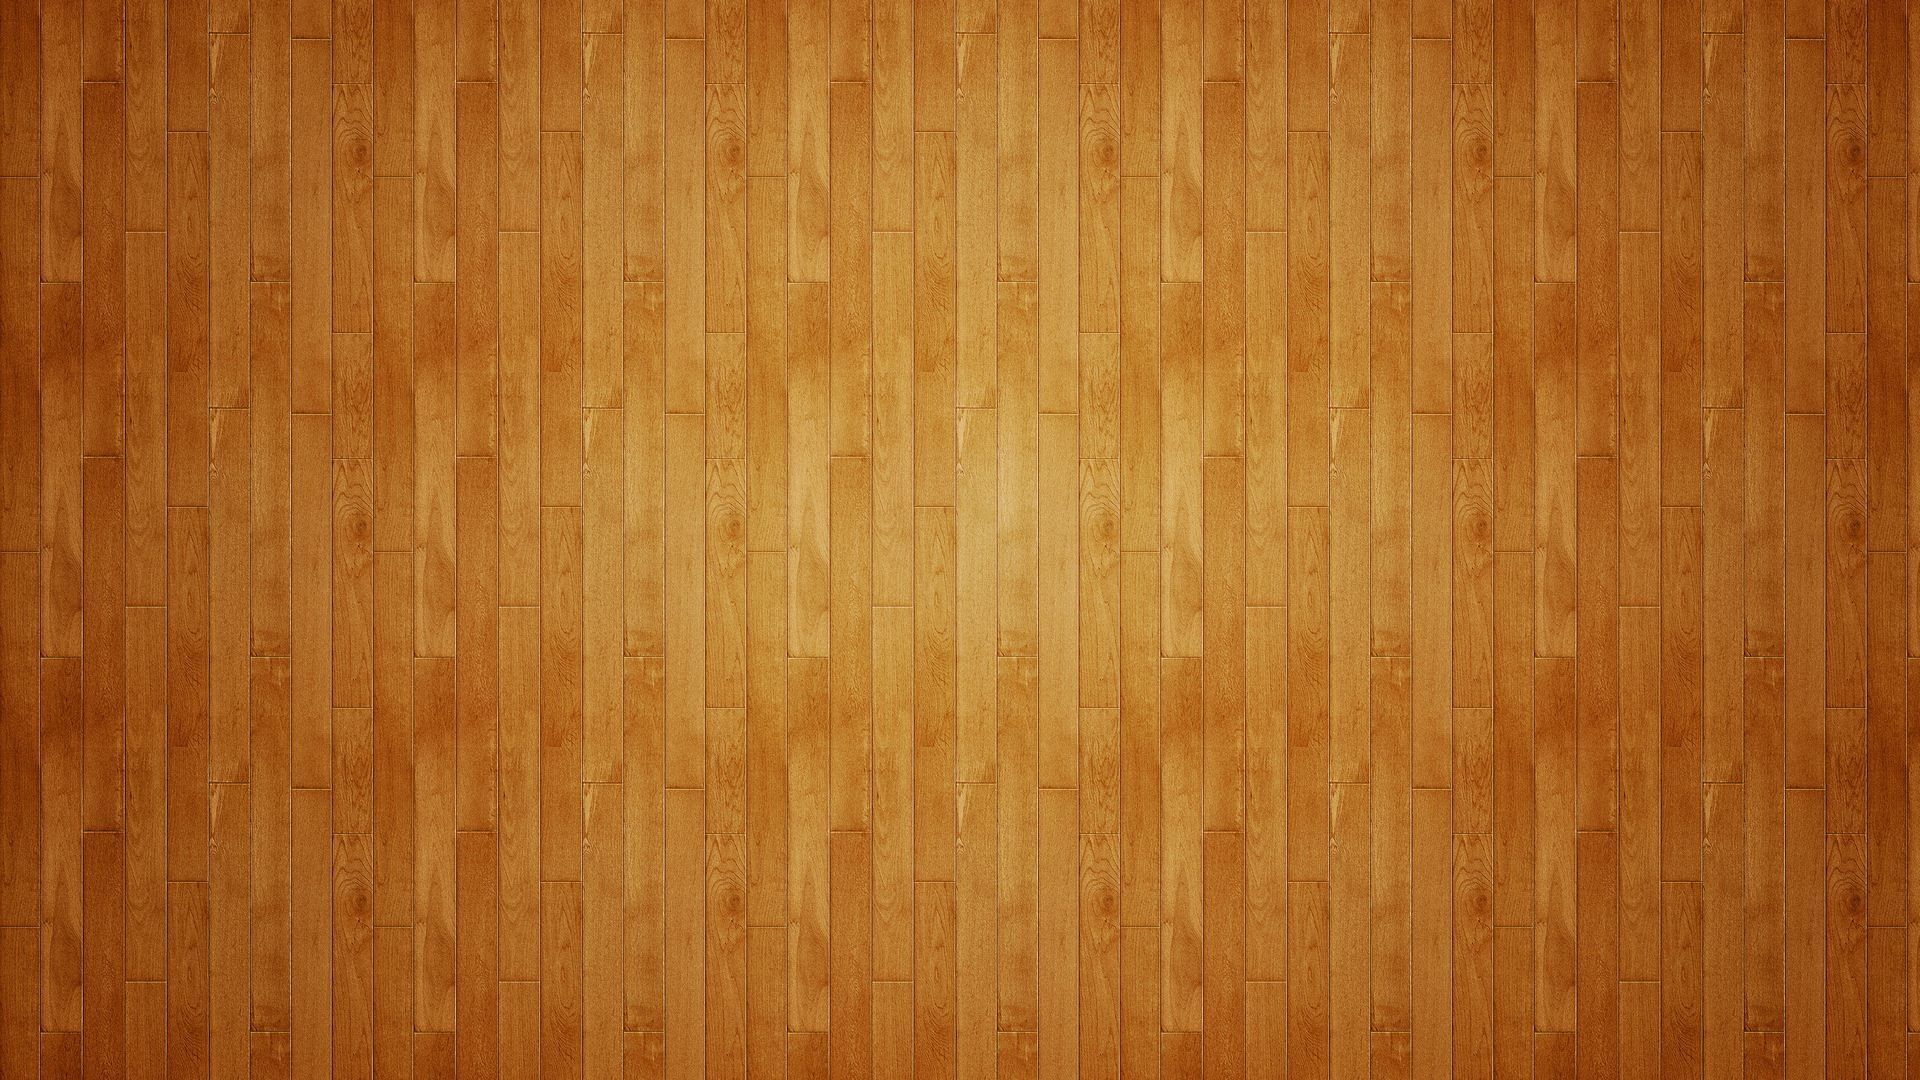 Wood Floor 1920x1080 (1080p) - Wallpaper - ImgPrix